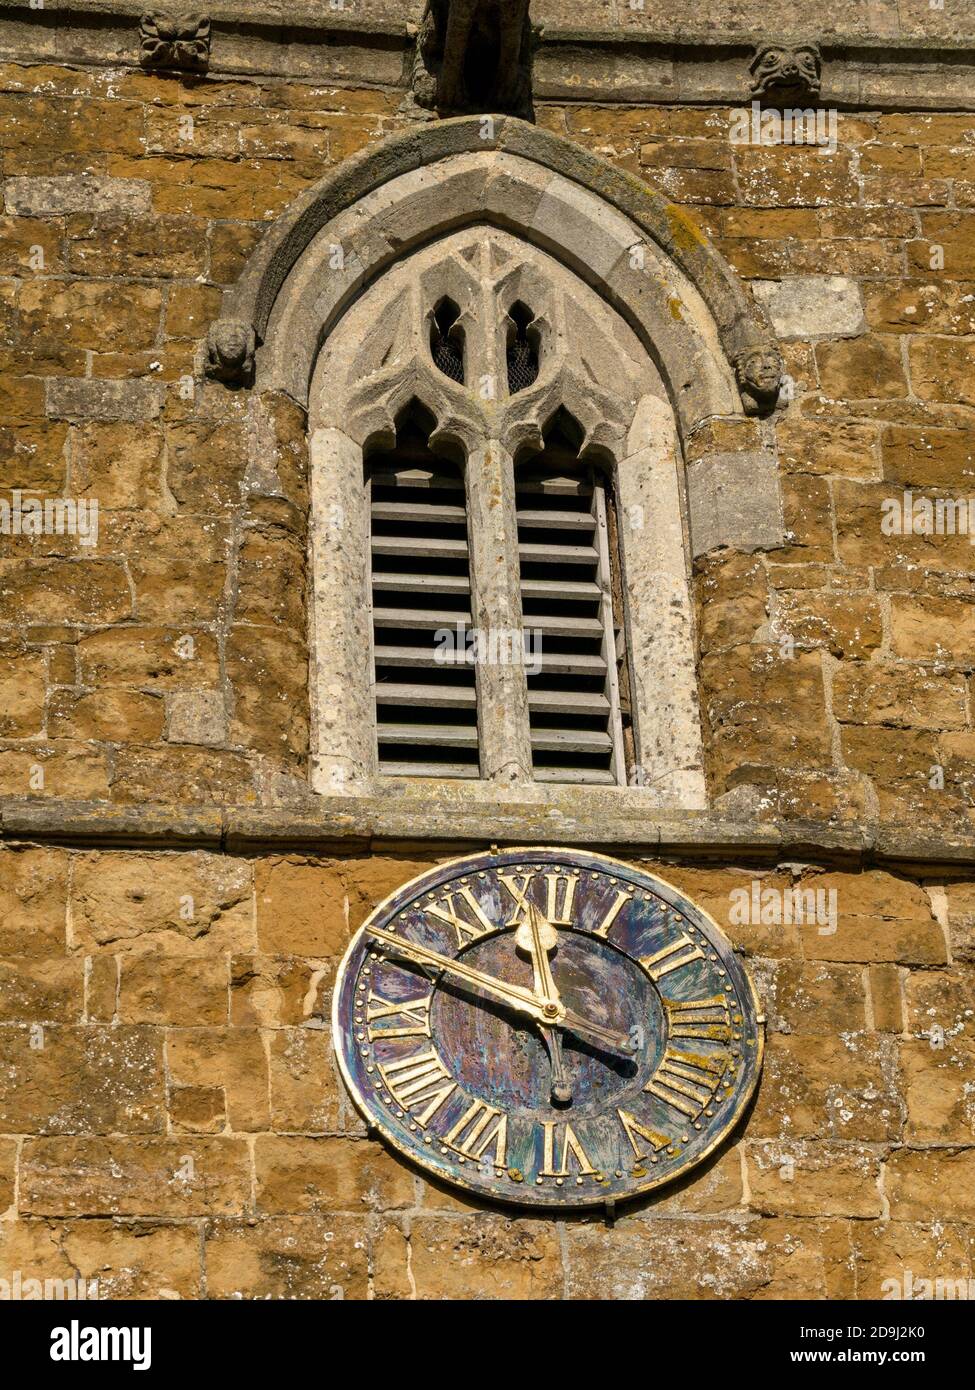 Horloge de l'église, église Saint-Pierre dans le village de Knossington, Leicestershire, Angleterre, Royaume-Uni Banque D'Images